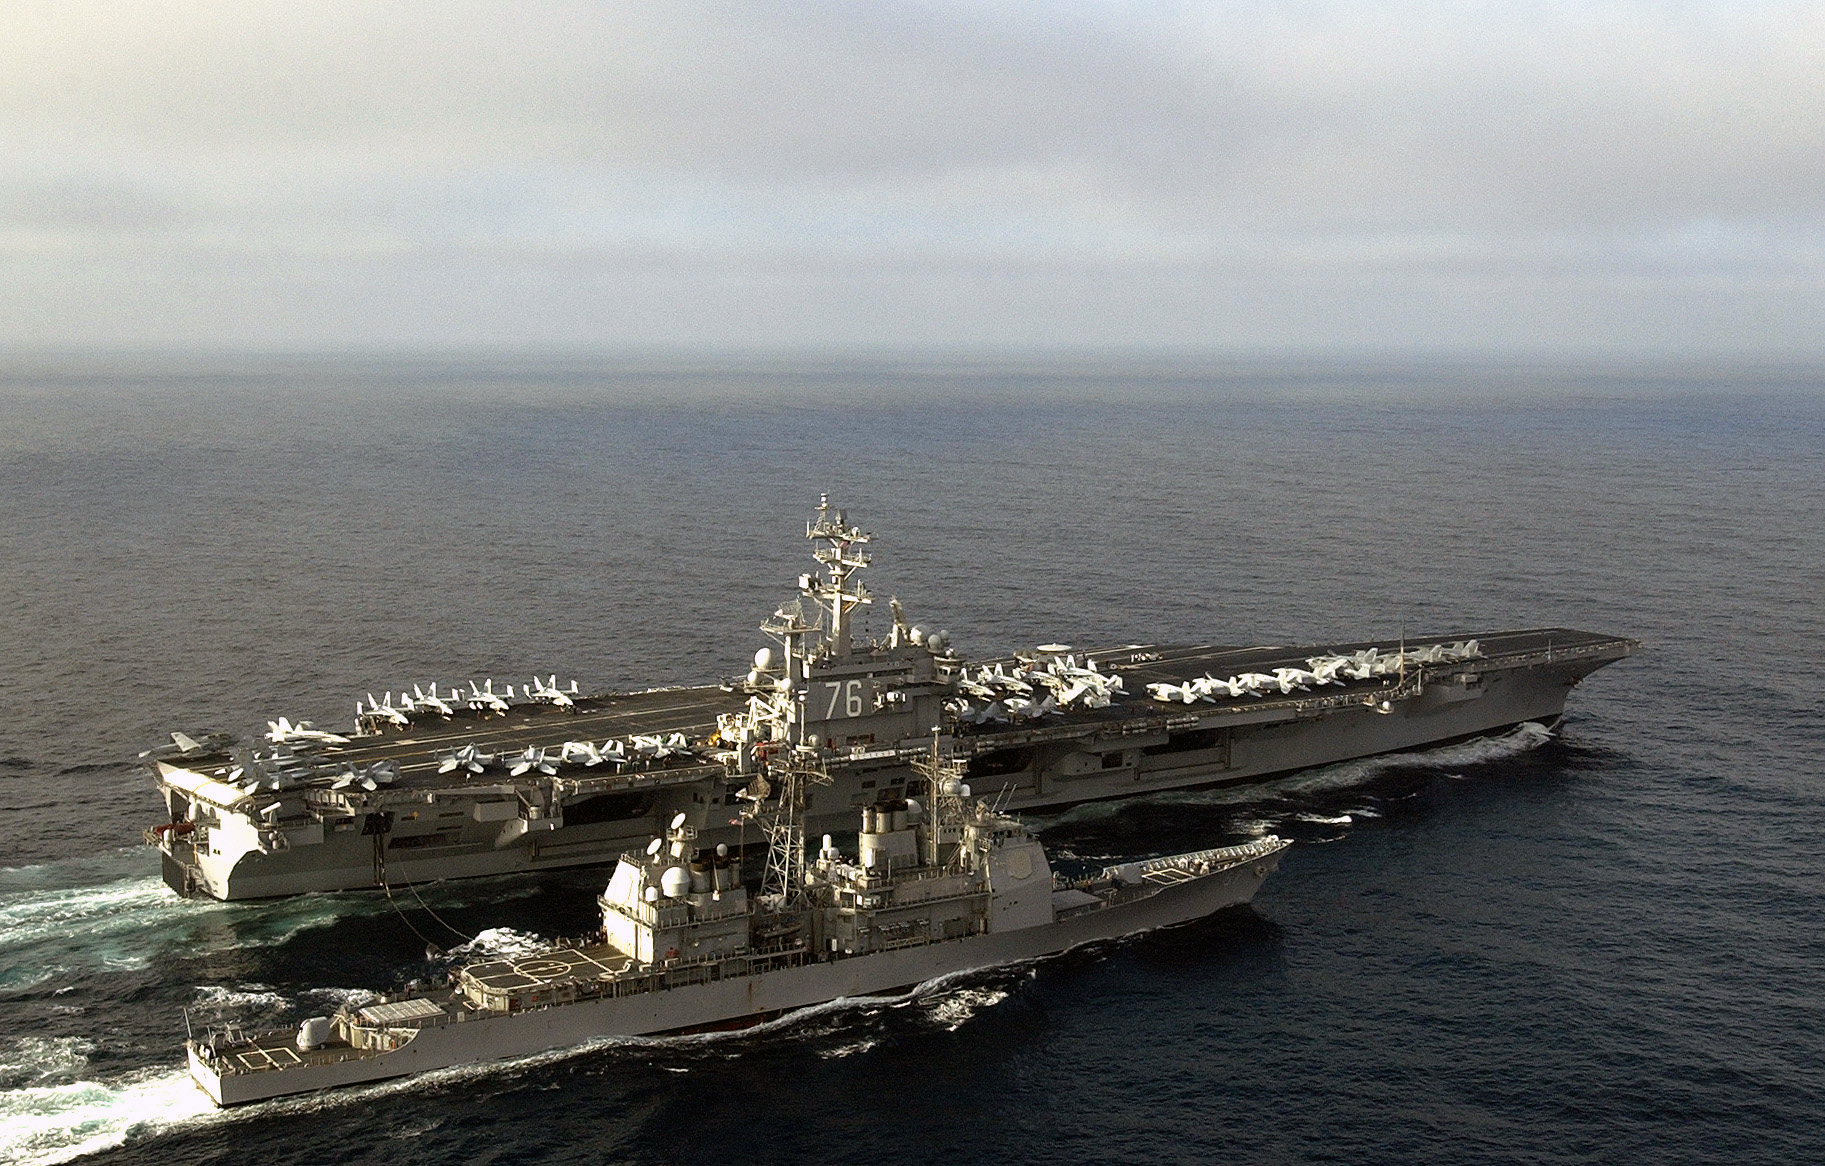 USS Ronald Reagan (CVN-76) Backgrounds, Compatible - PC, Mobile, Gadgets| 1825x1166 px